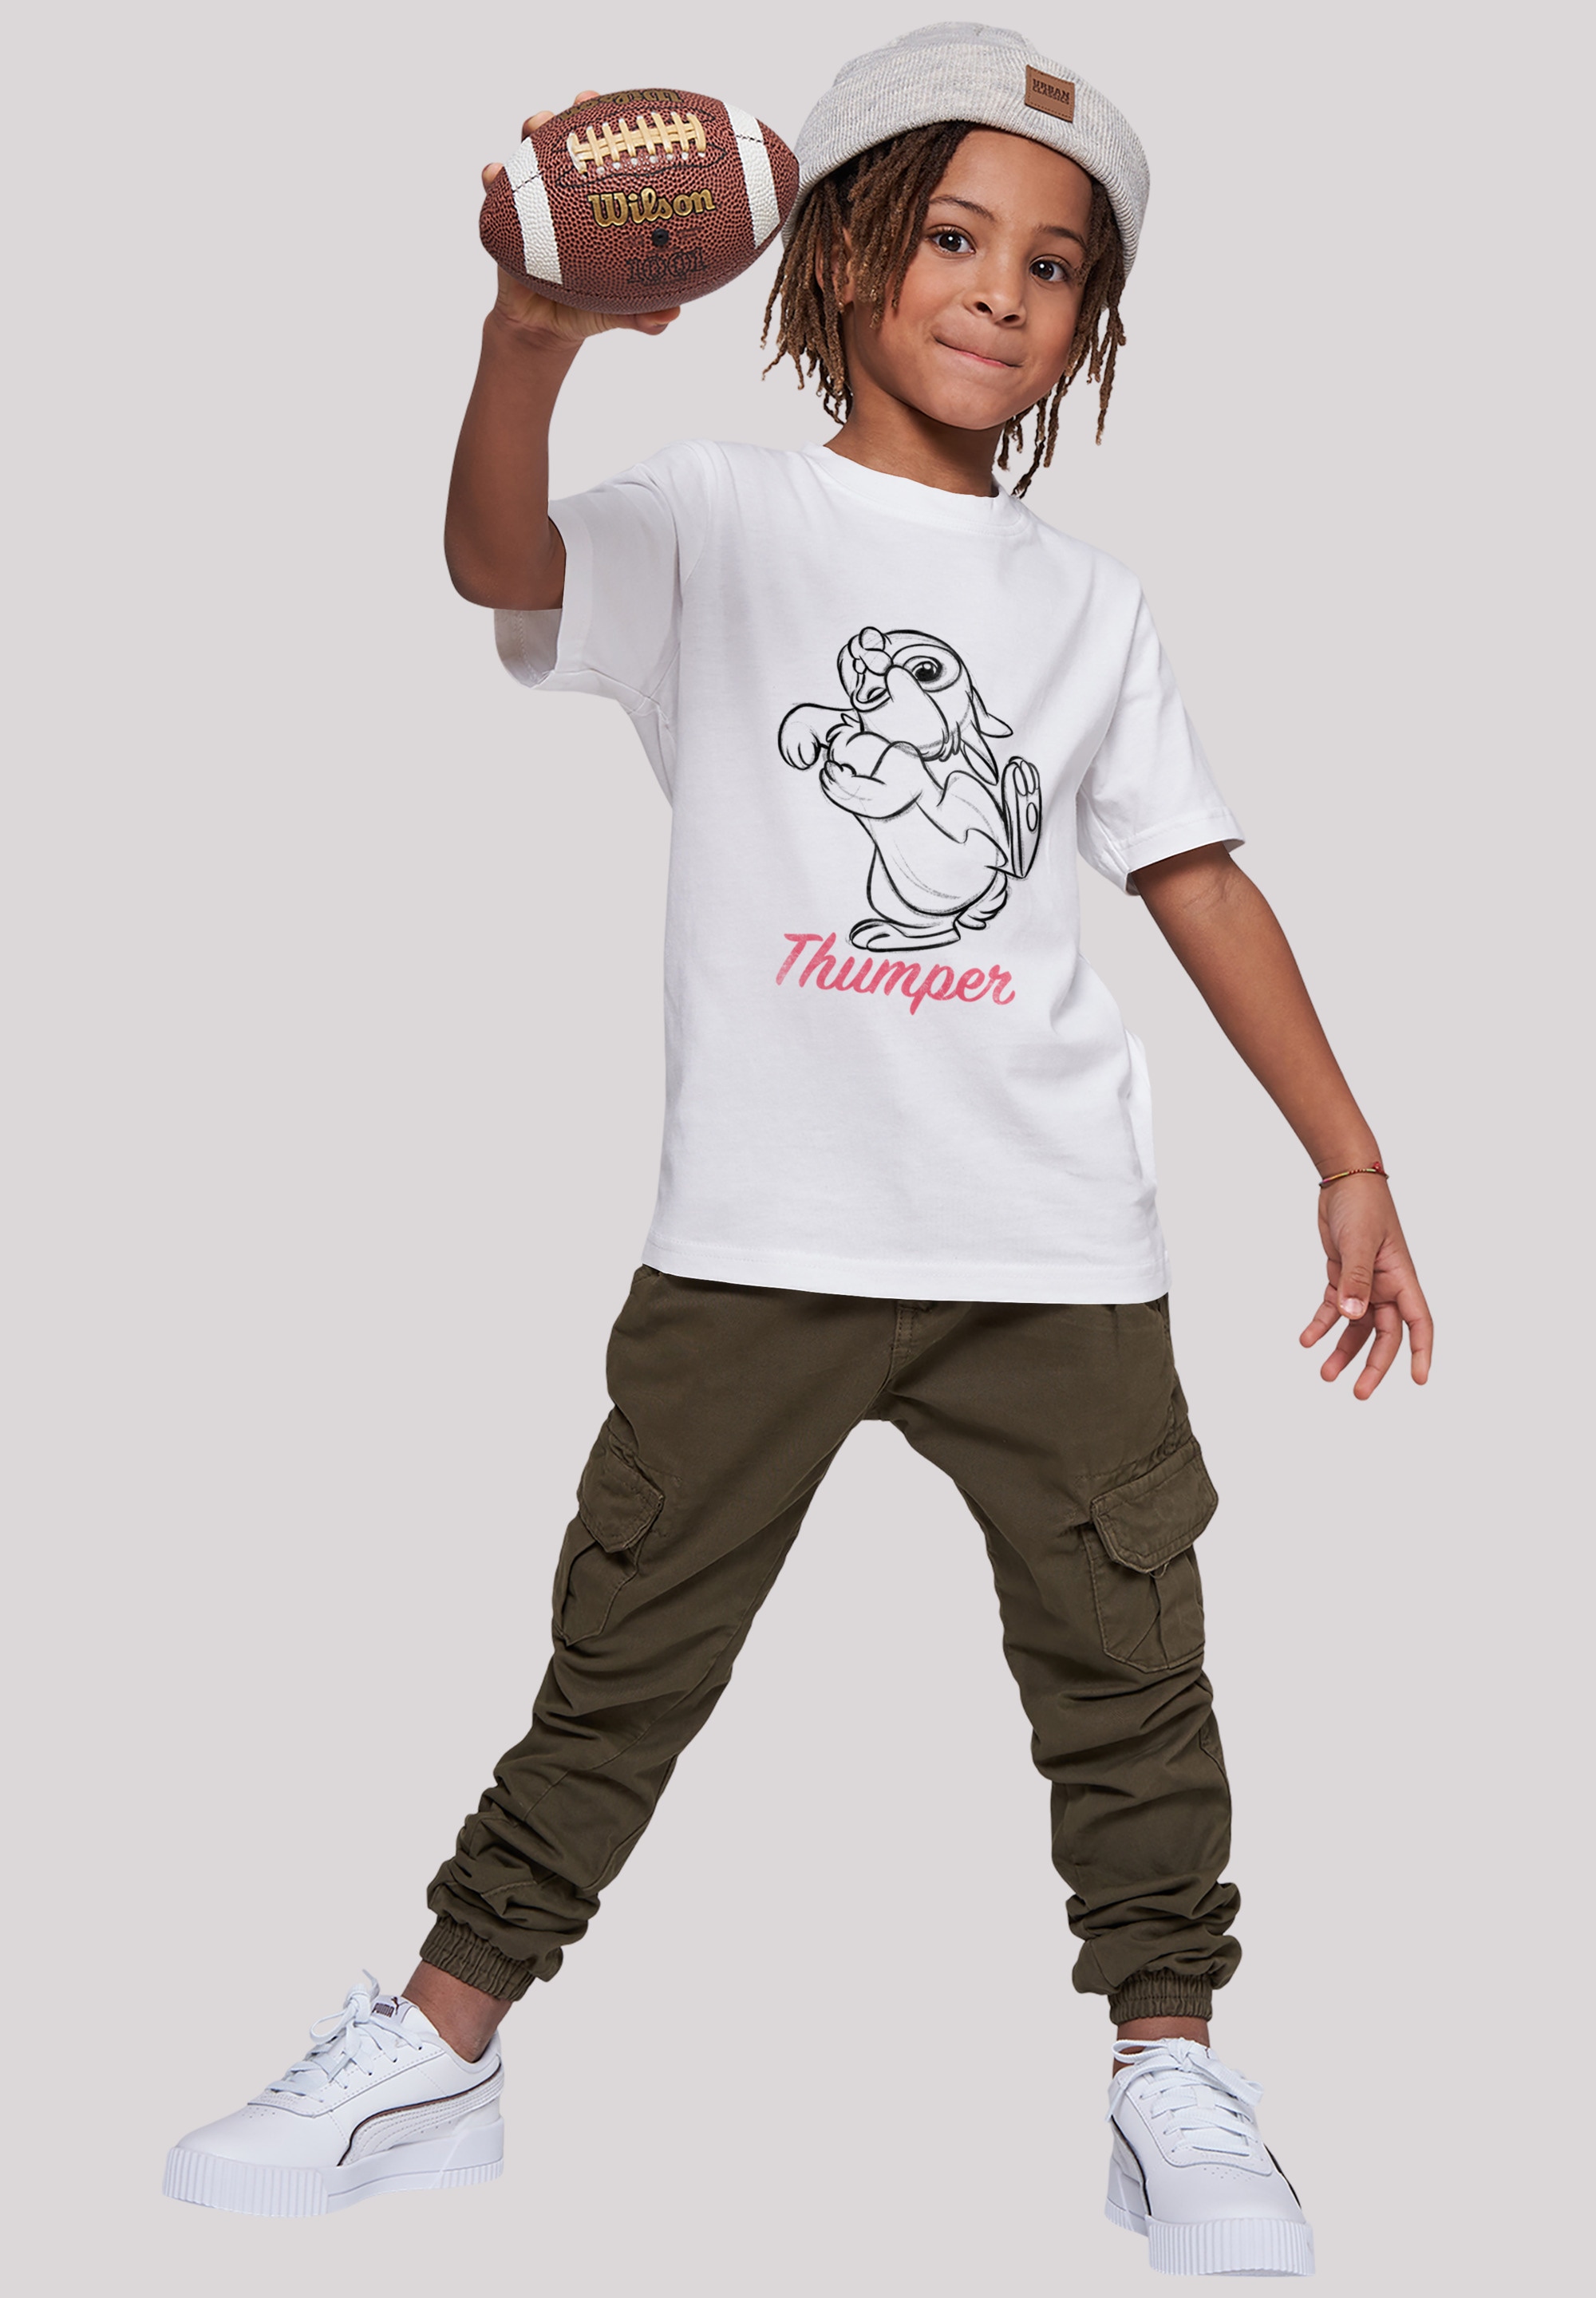 BAUR Zeichnung«, Line kaufen Klopfer »Disney Bambi Merch,Jungen,Mädchen,Bedruckt | F4NT4STIC T-Shirt Kinder,Premium online Unisex